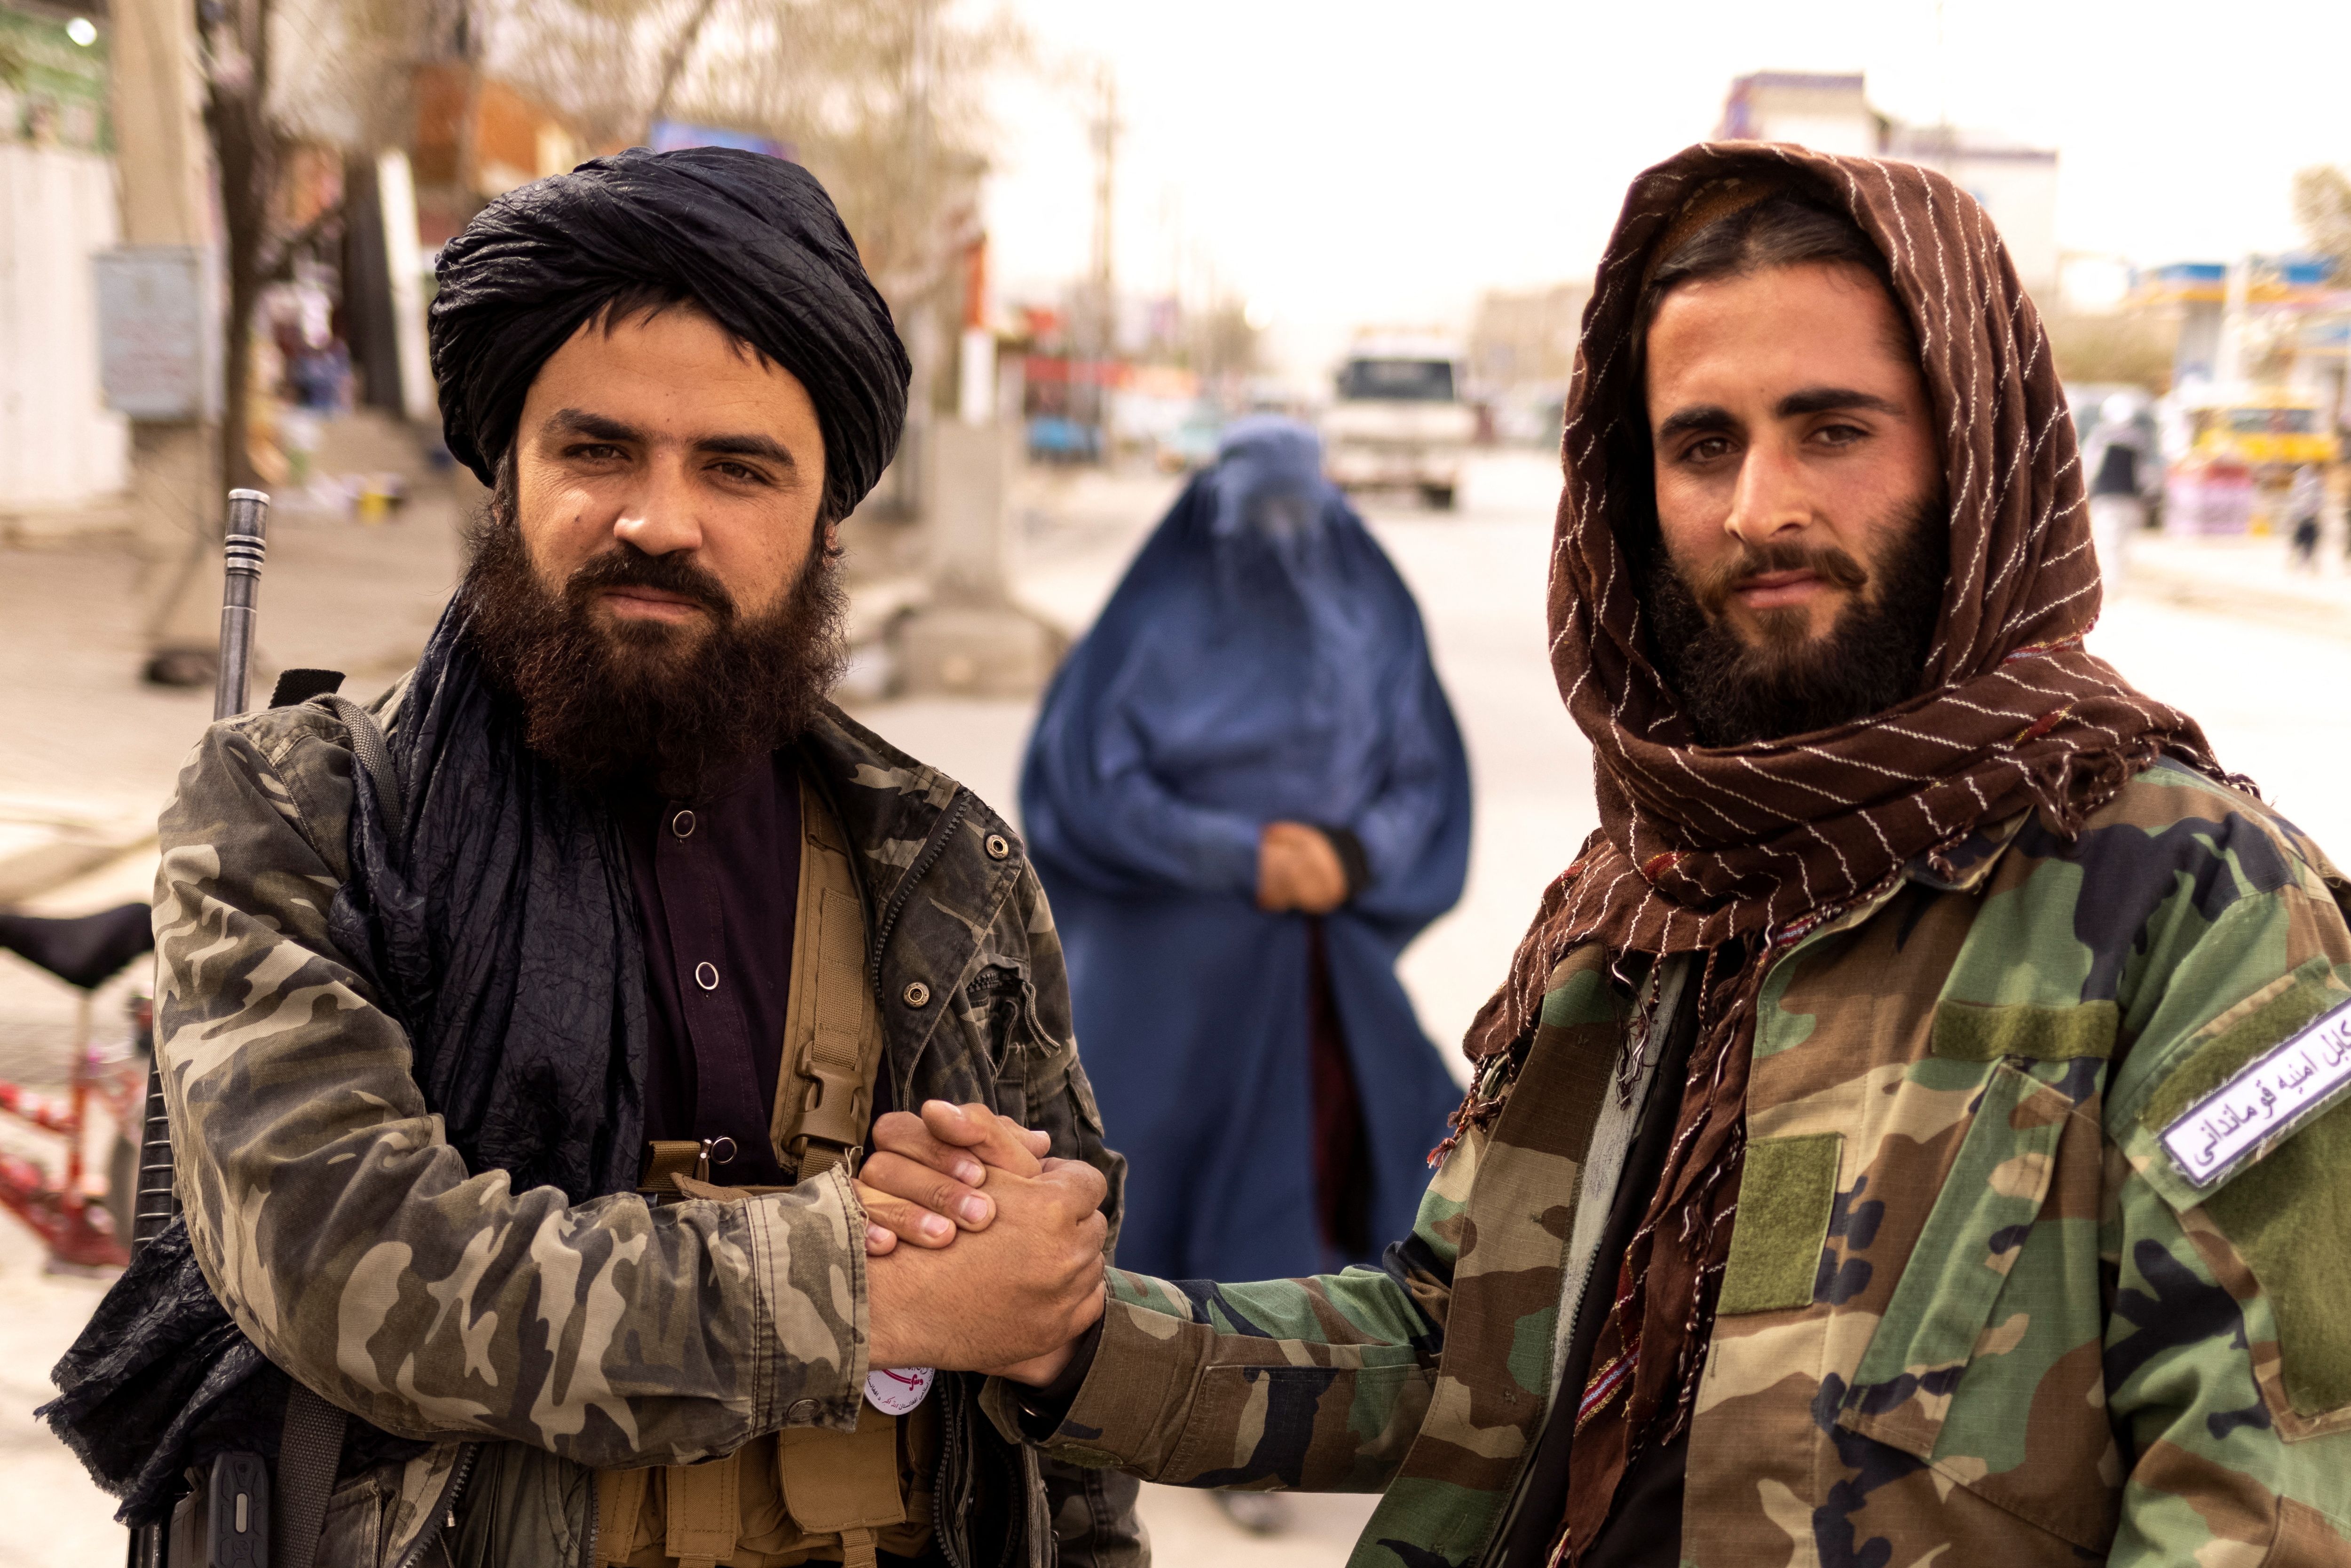 Los miembros talibanes Muhammad Aref y Junaid se saludan en un puesto de control, mientras una mujer con burka camina detrás de ellos, en Kabul, Afganistán, el 22 de octubre de 2021. Imagen tomada el 22 de octubre de 2021. REUTERS/Jorge Silva